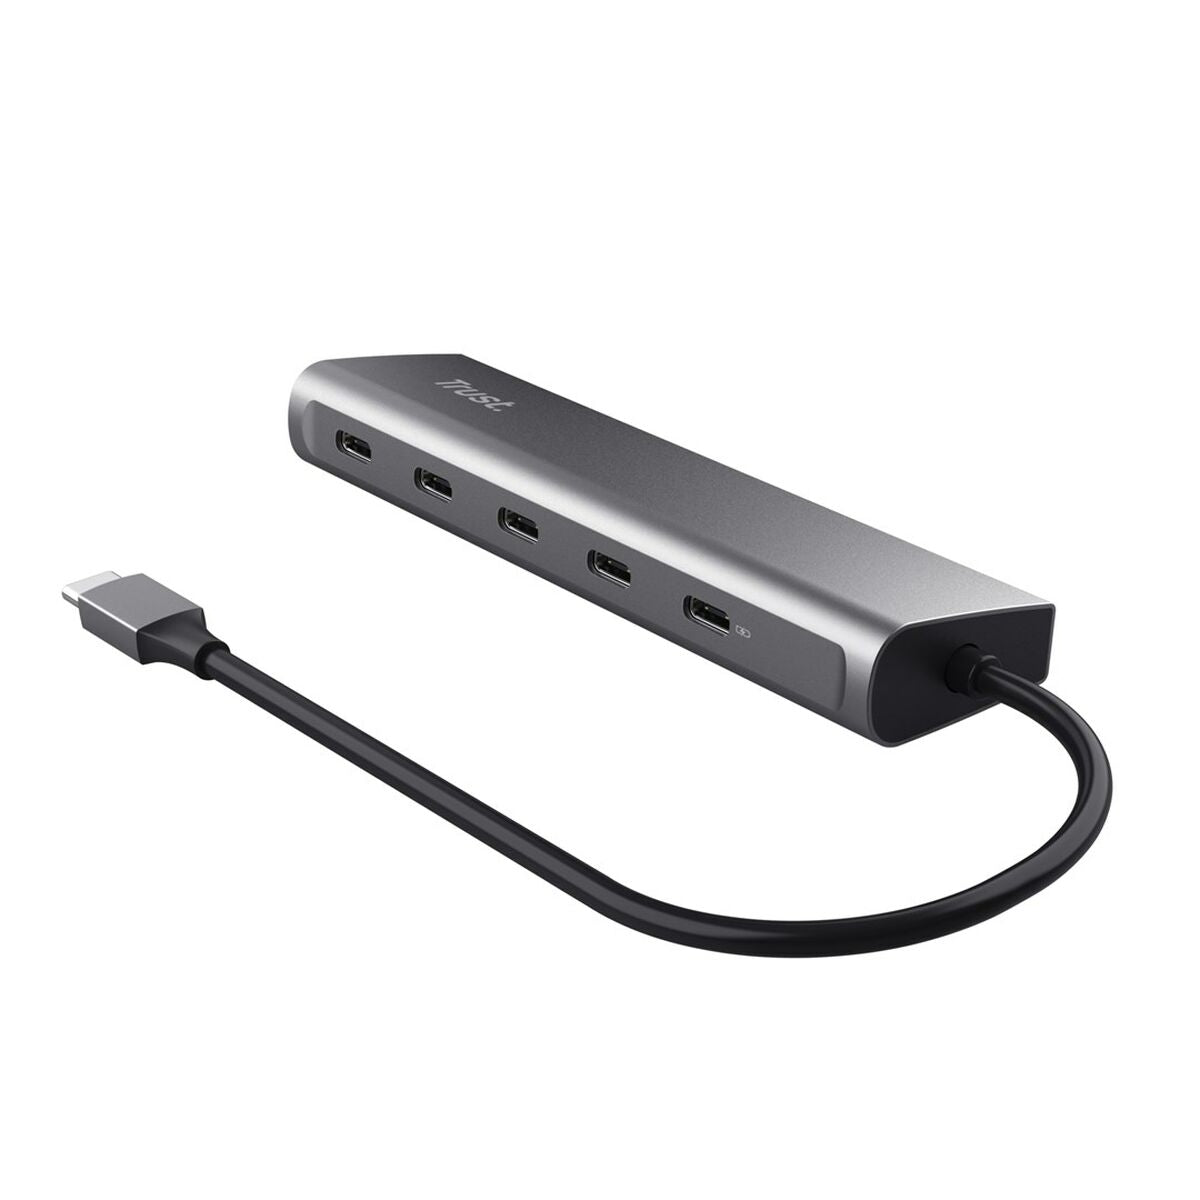 USB Hub Trust 25136 100 W Silver (1 Unit)-2